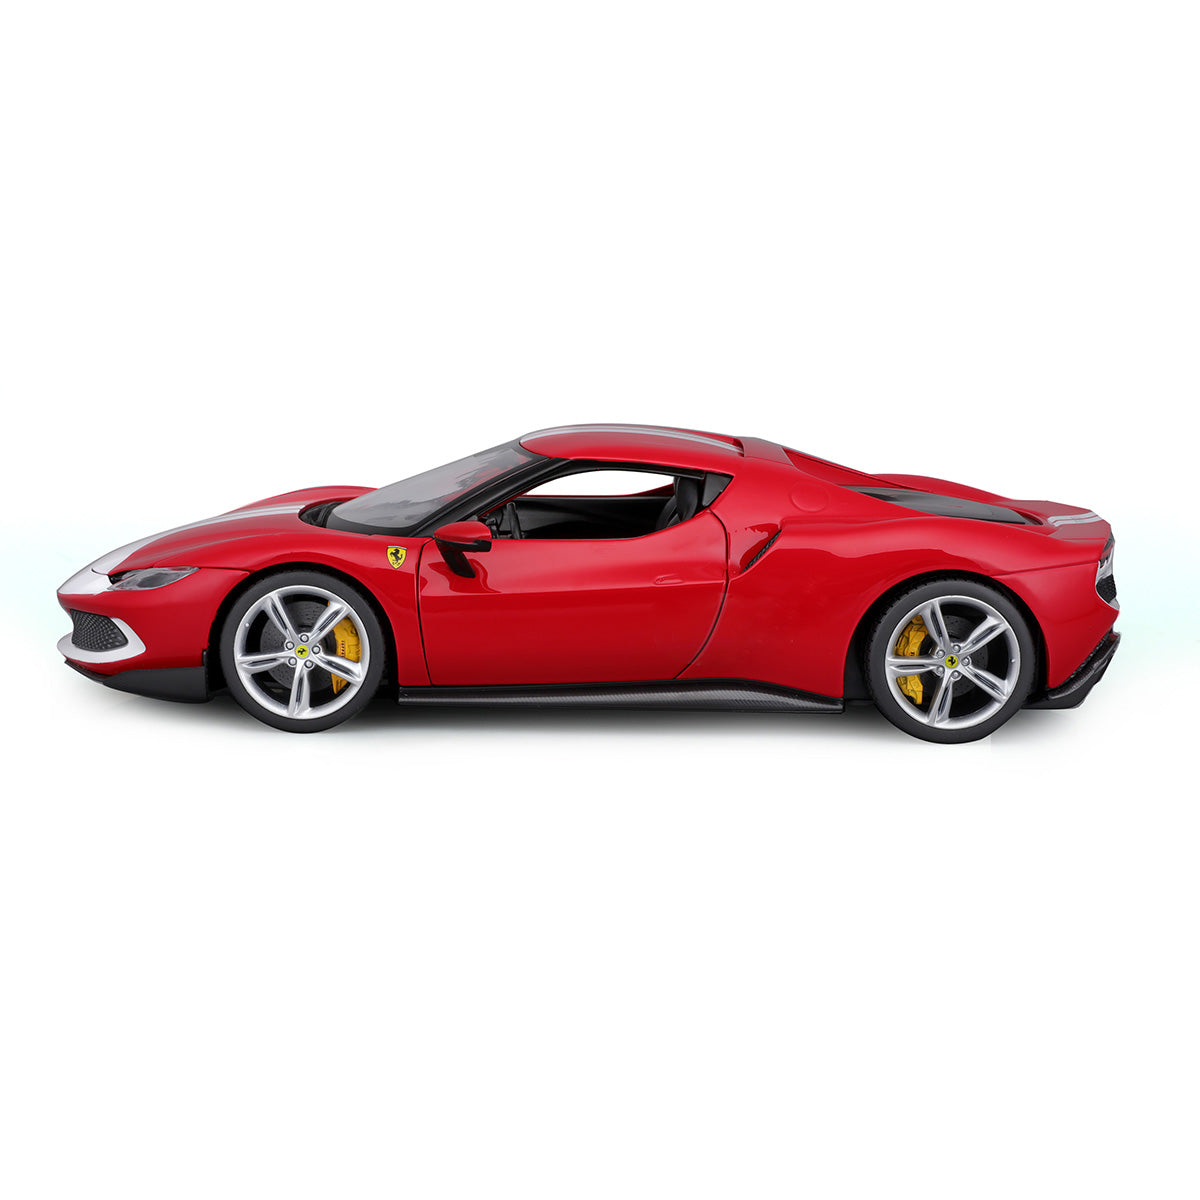 Bburago Ferrari 296 GTB Assetto Fiorano - The Passion in Miniature 